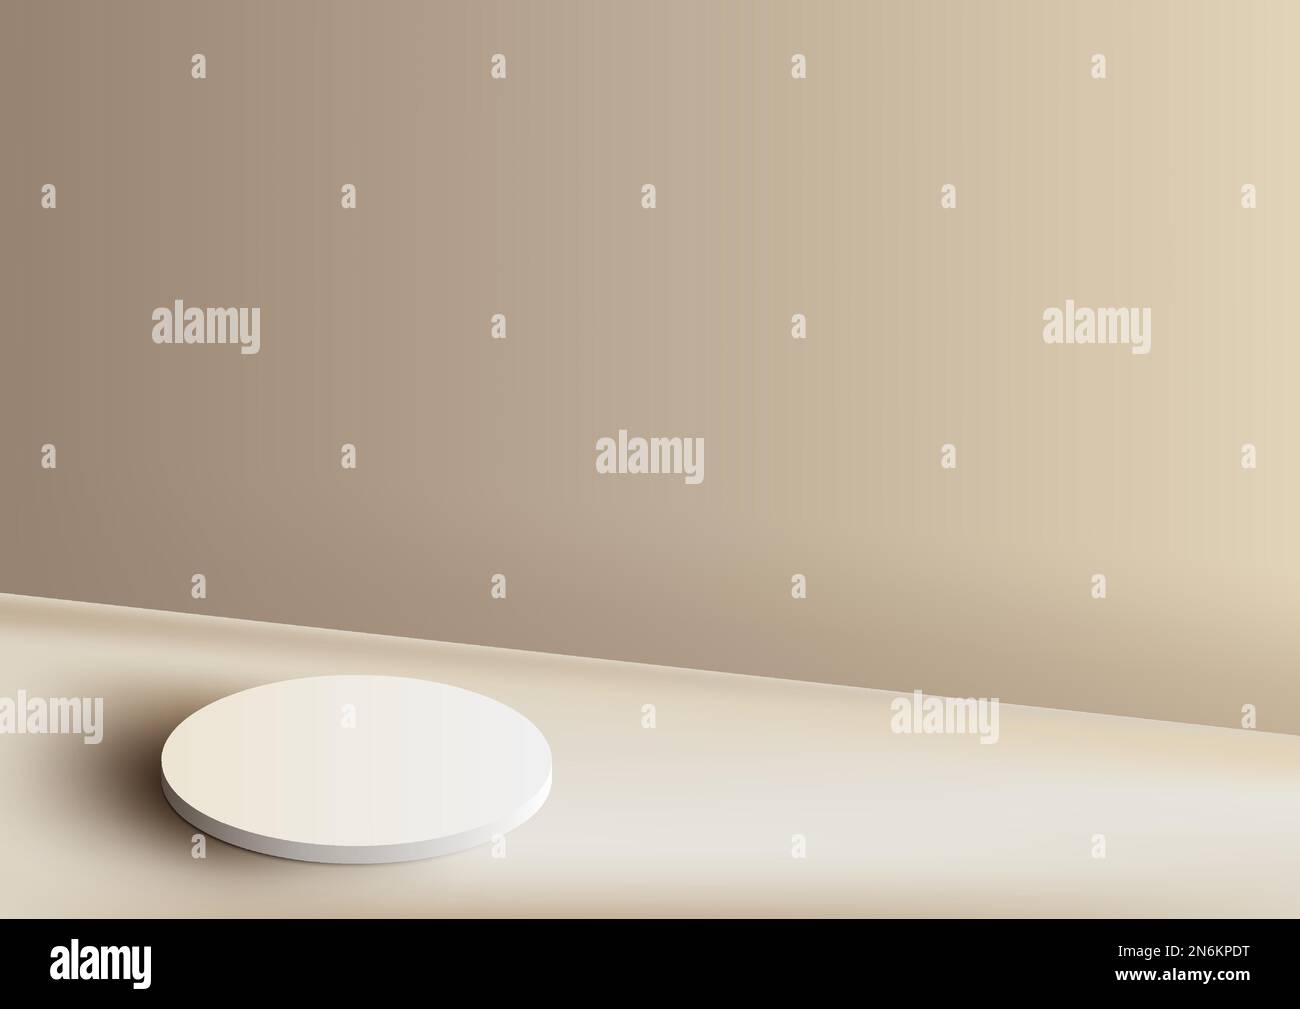 3D realistisch weiße Podiumplattform mit minimaler Wandszene auf beigefarbenem Hintergrund. Display für Spa und Beauty, Präsentation von Kosmetikprodukten, m Stock Vektor